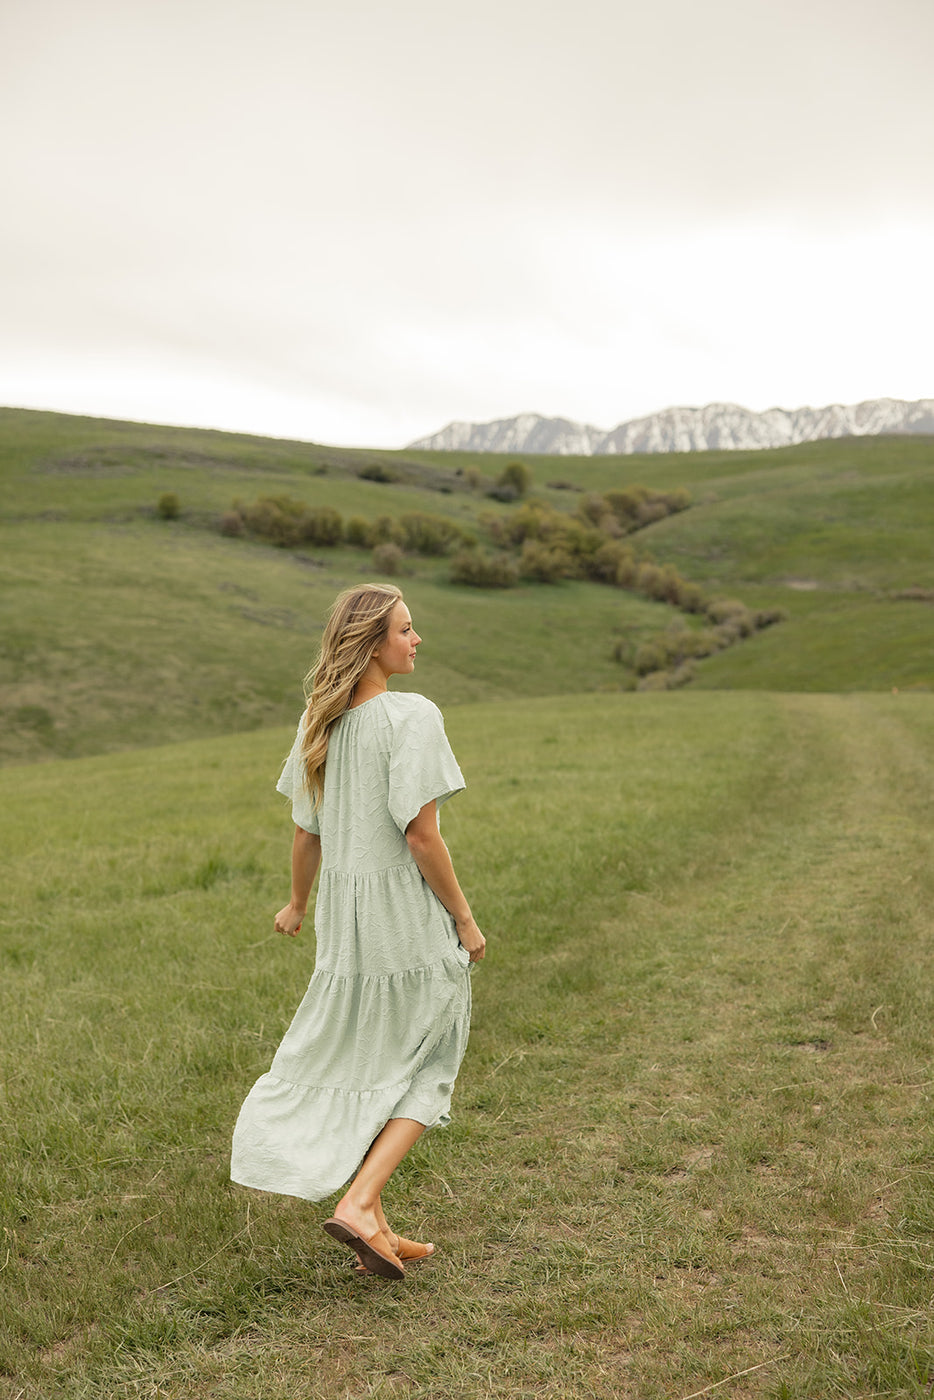 a woman in a dress walking in a grassy field